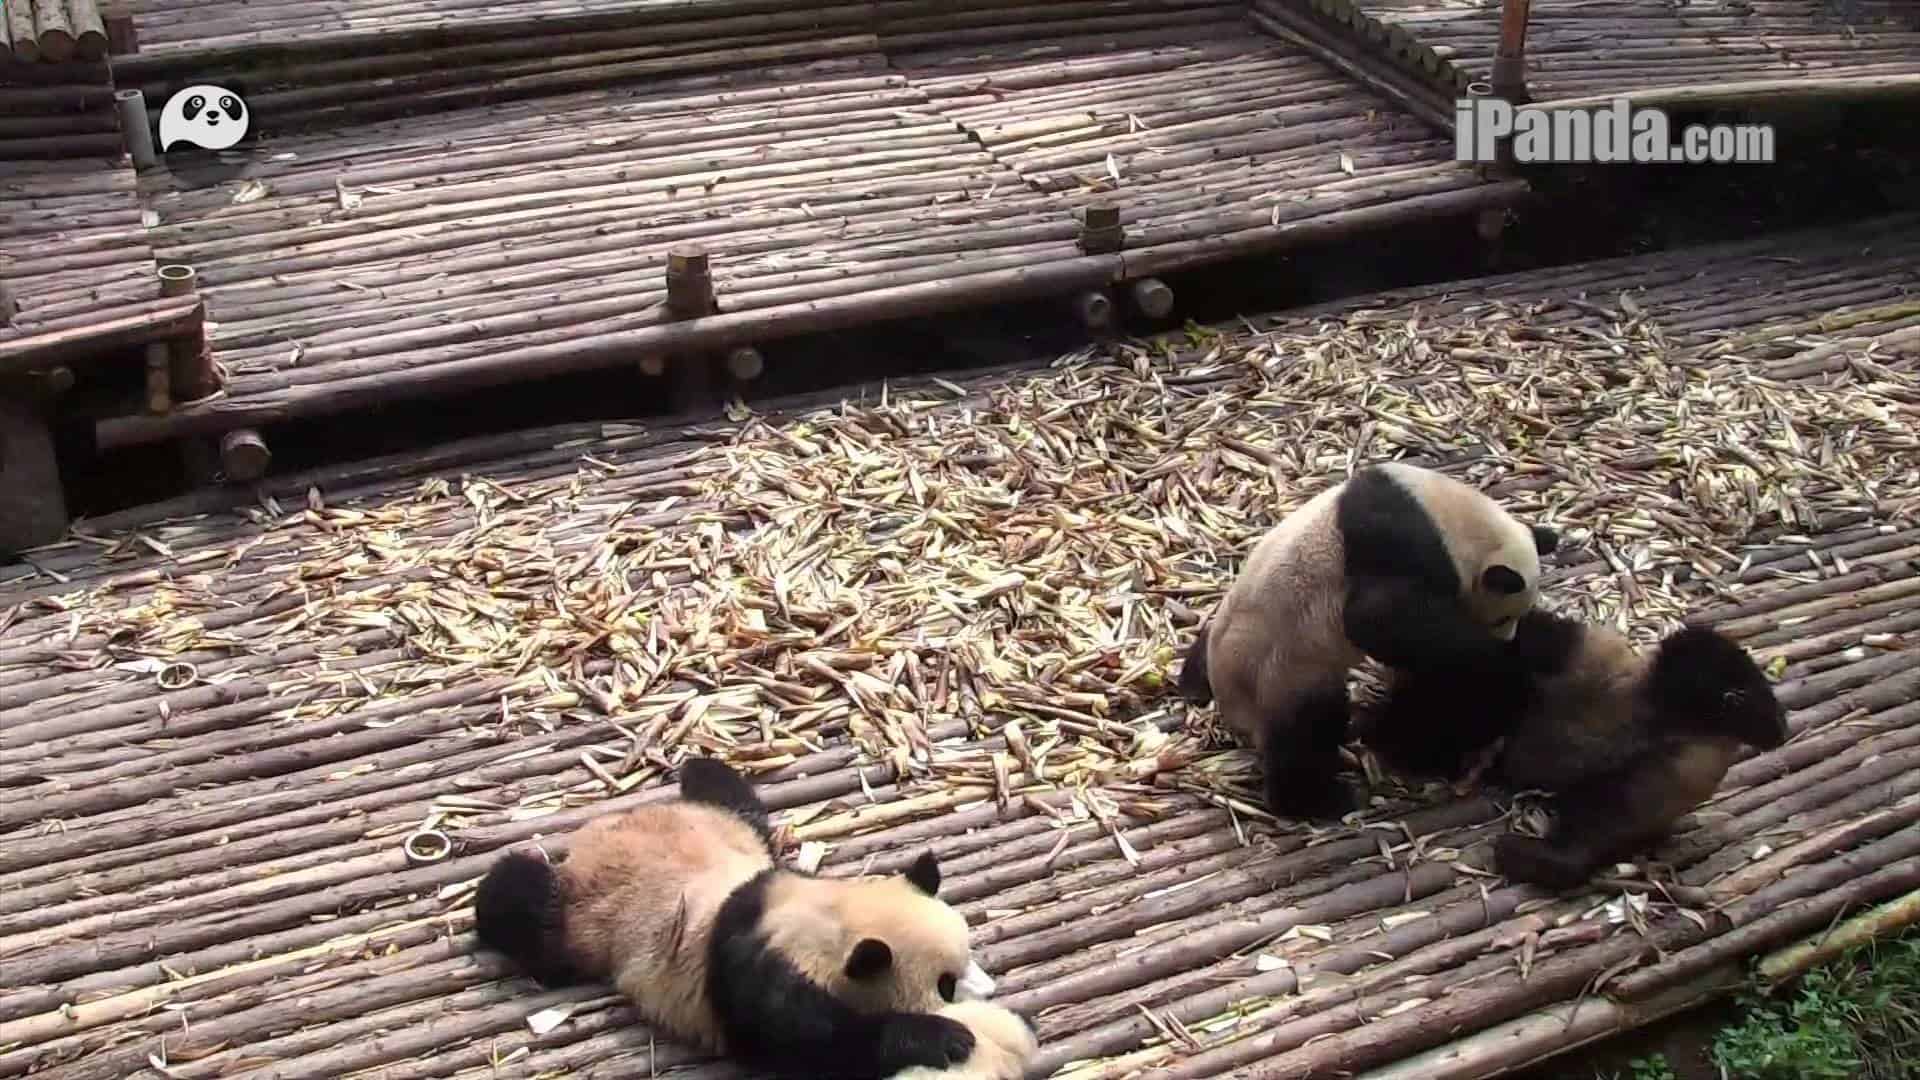 Güreş pandaları